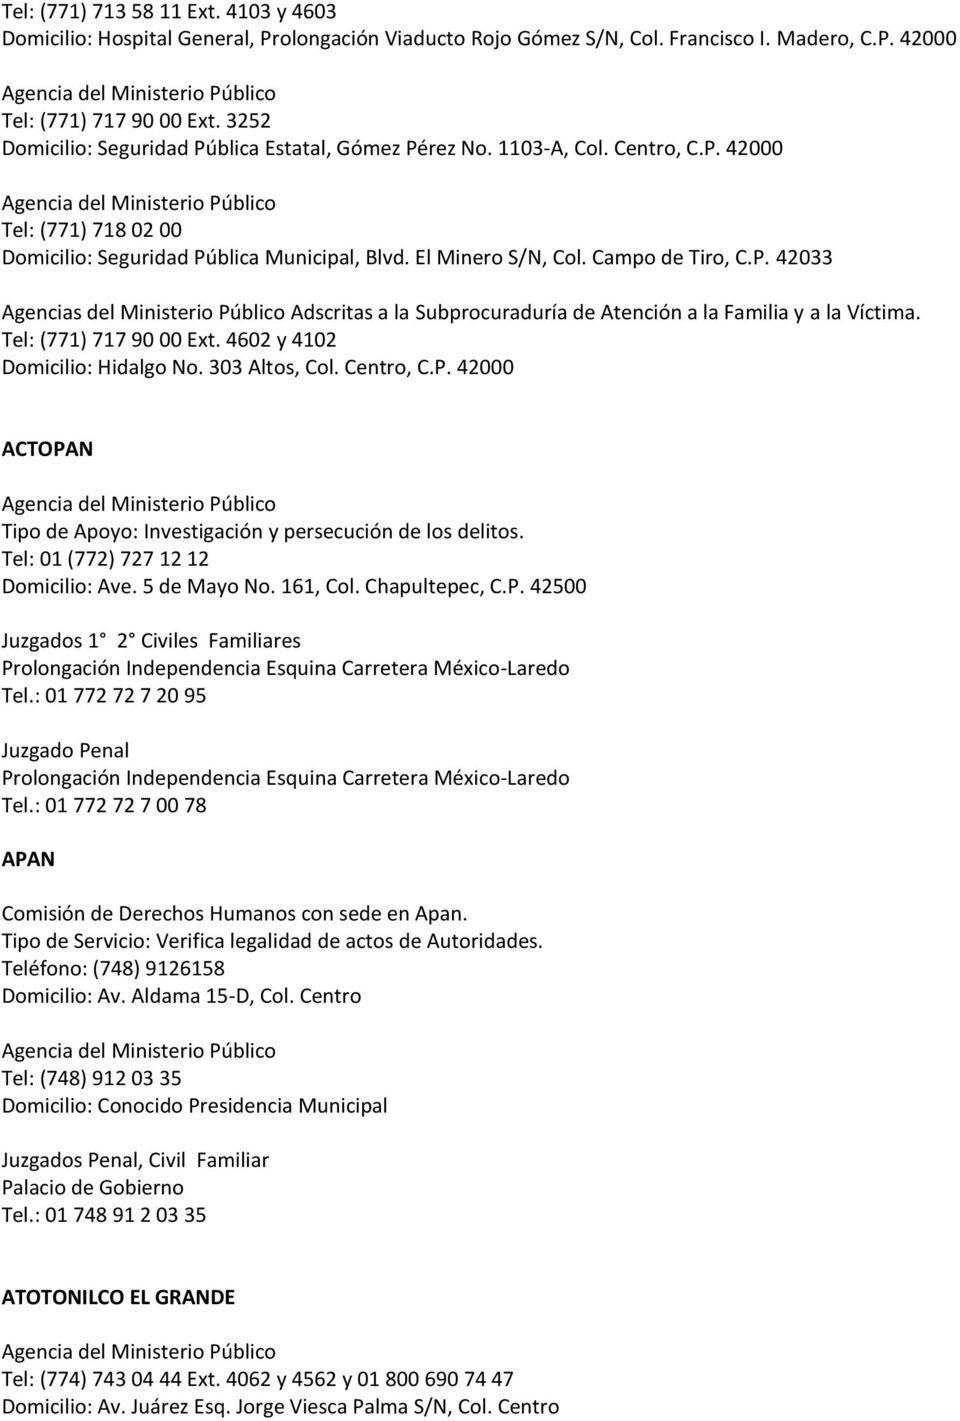 Tel: (771) 717 90 00 Ext. 4602 y 4102 Domicilio: Hidalgo No. 303 Altos, Col. Centro, C.P. 42000 ACTOPAN Tipo de Apoyo: Investigación y persecución de los delitos.